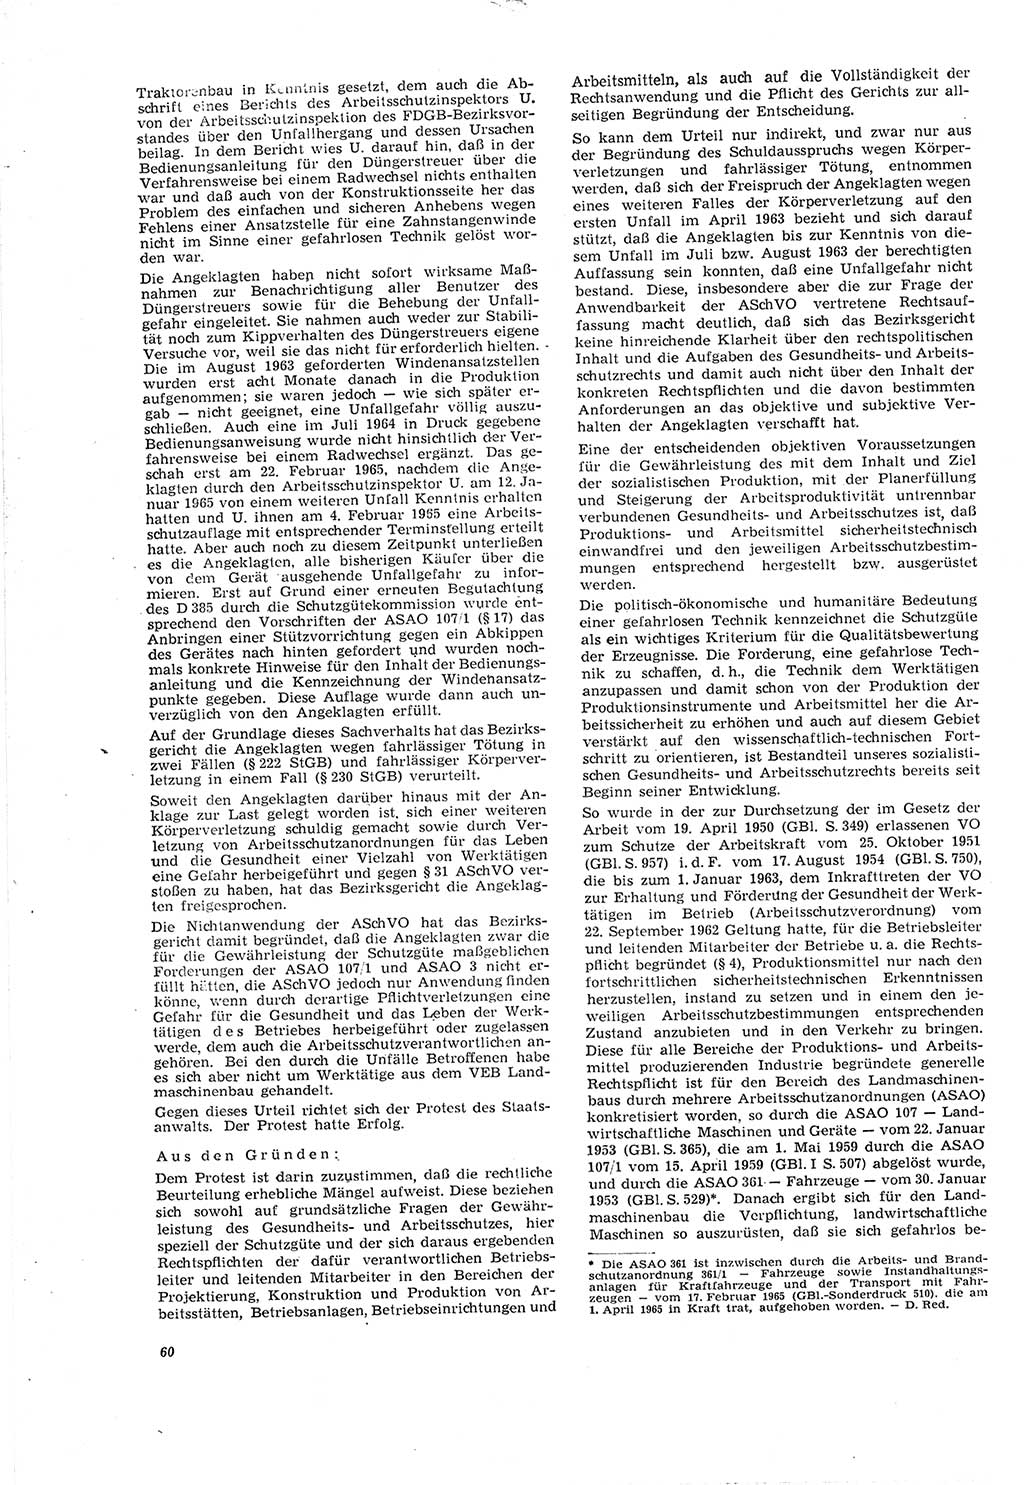 Neue Justiz (NJ), Zeitschrift für Recht und Rechtswissenschaft [Deutsche Demokratische Republik (DDR)], 20. Jahrgang 1966, Seite 60 (NJ DDR 1966, S. 60)